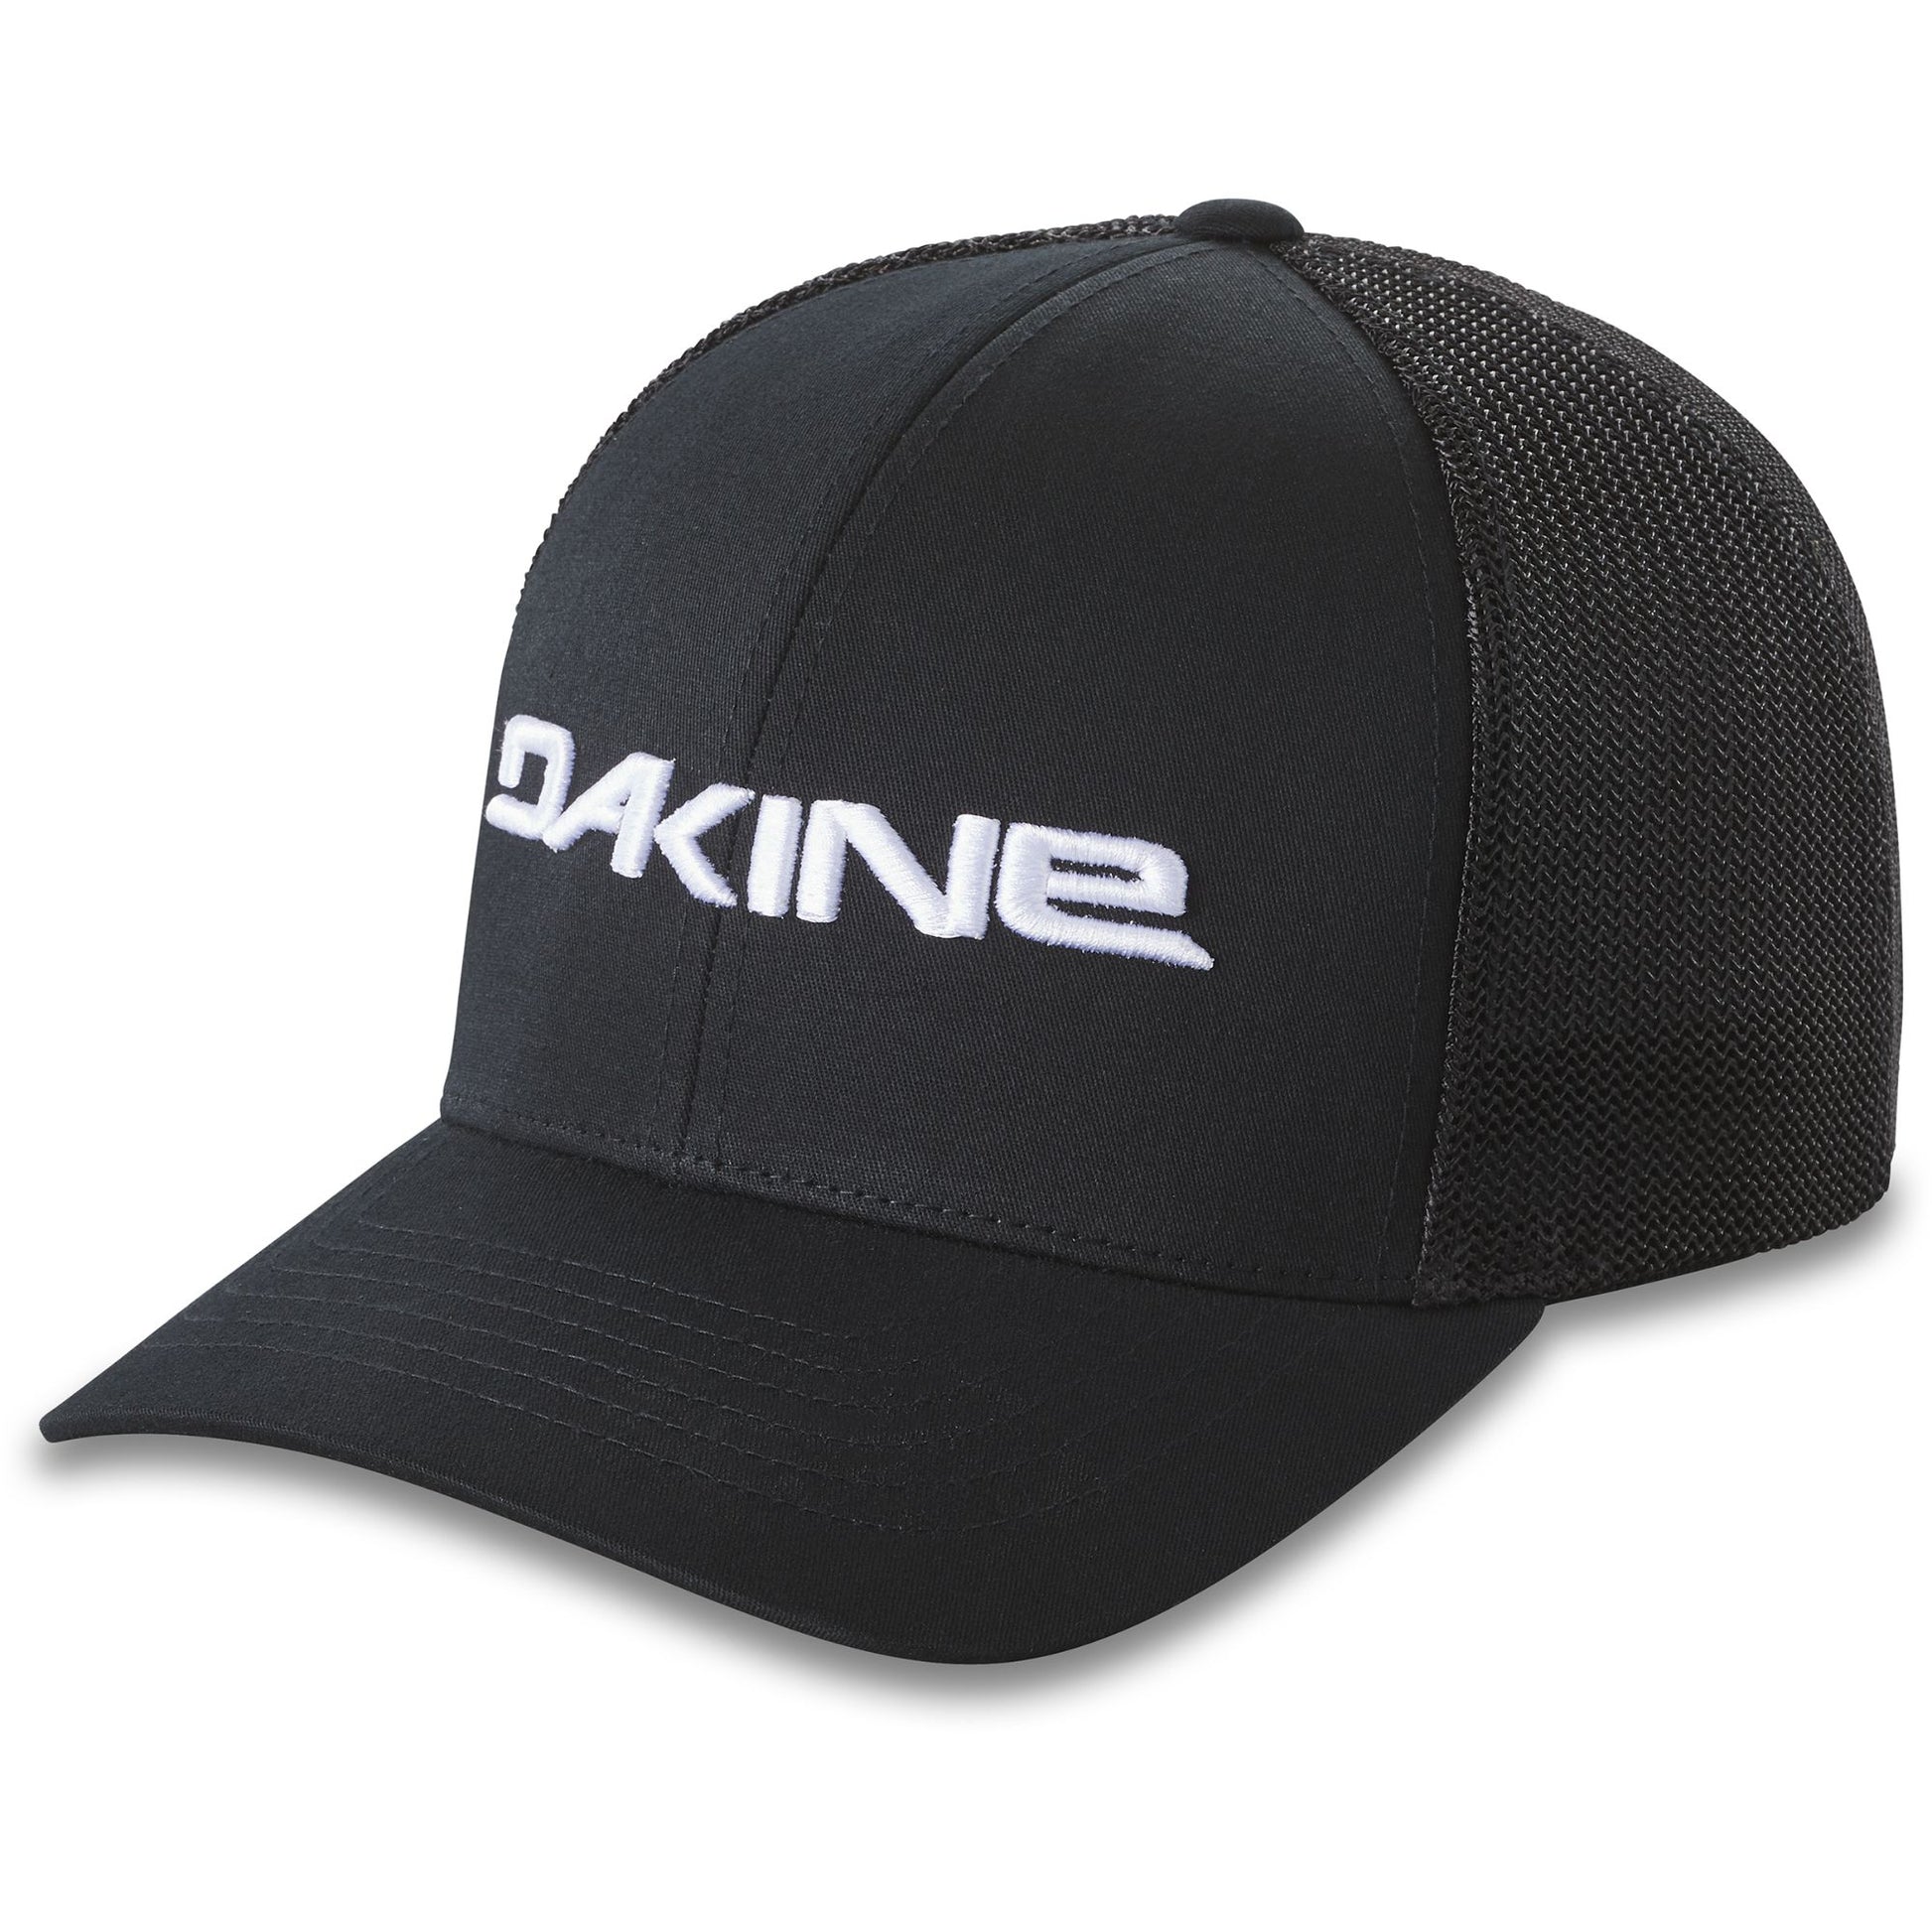 Dakine Sideline Trucker – Hat